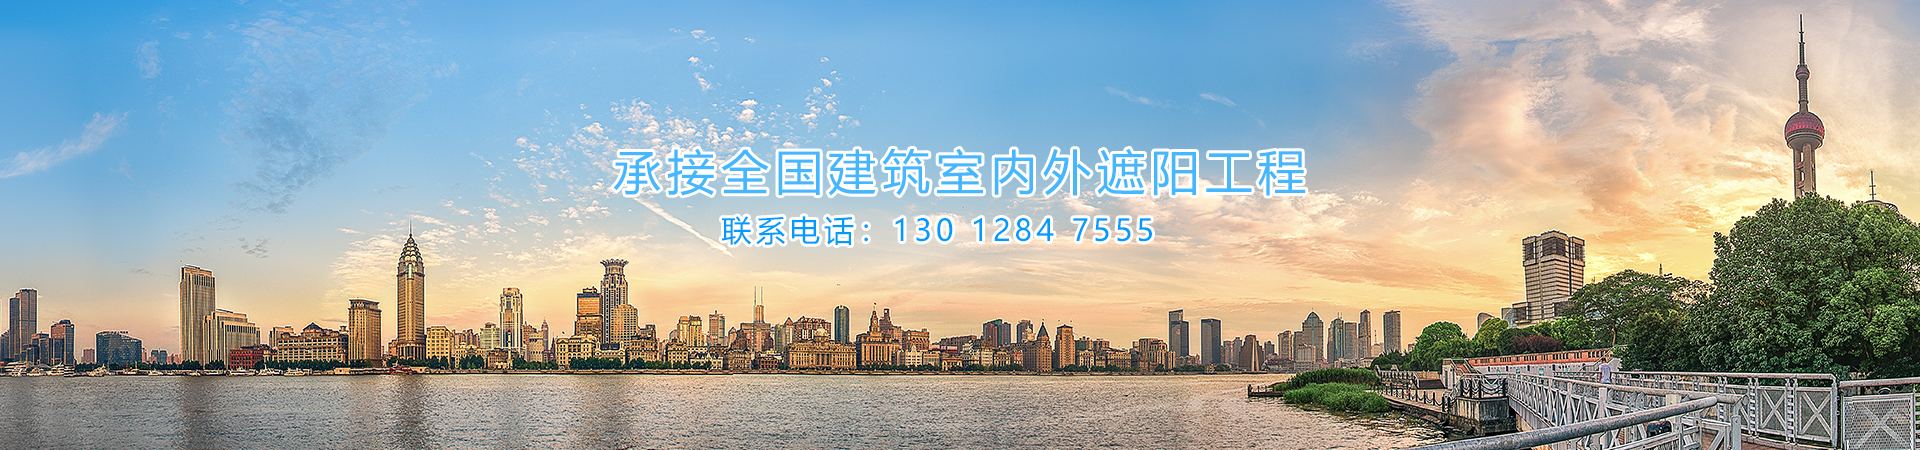 上海凉度智能遮阳技术有限公司